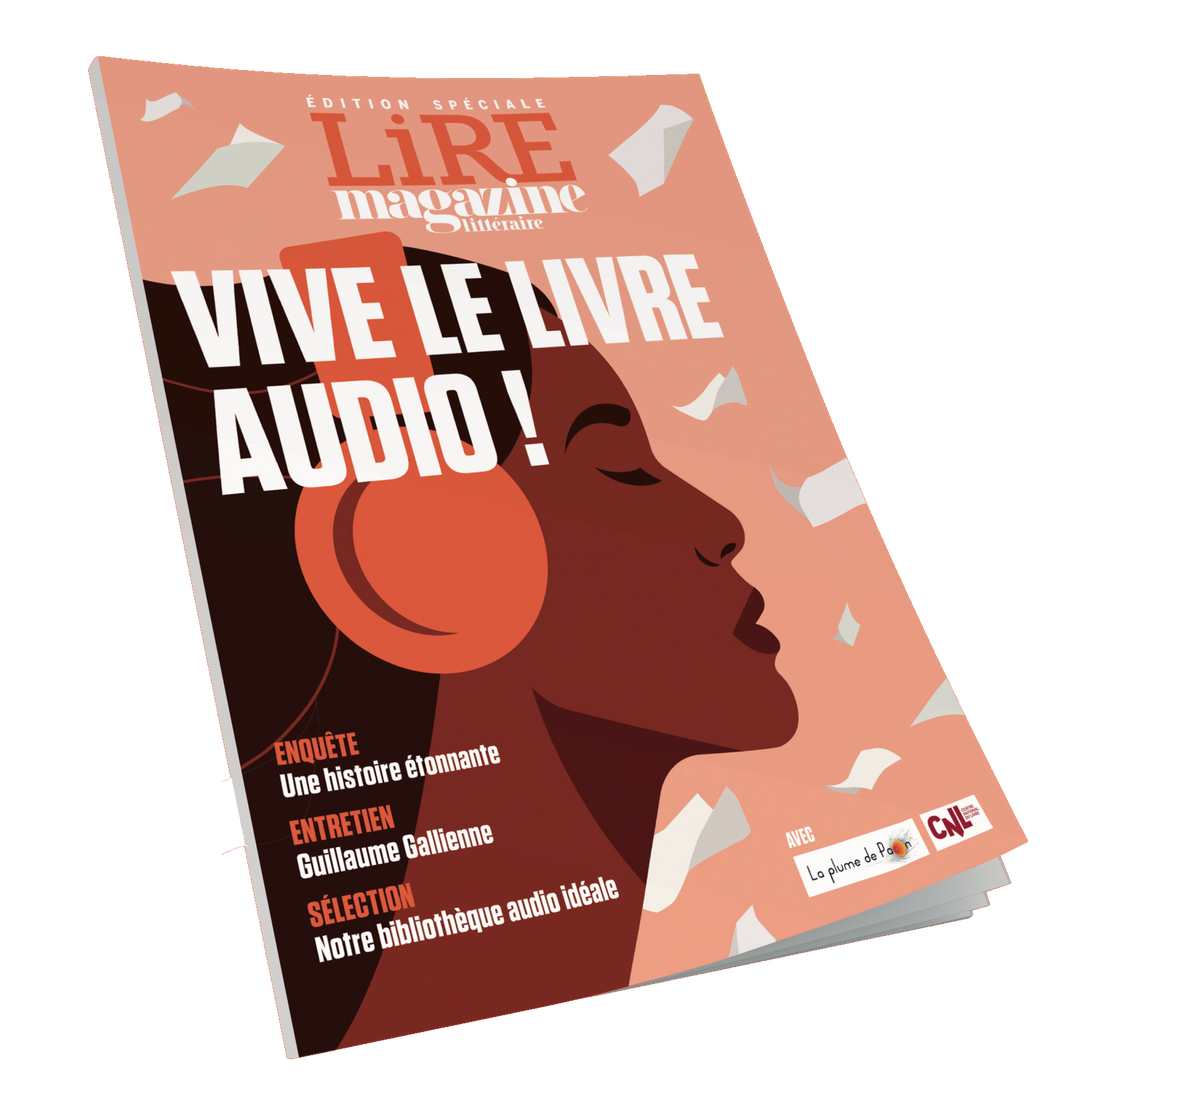 Le livre audio vers la voie de l'offre illimitée en France